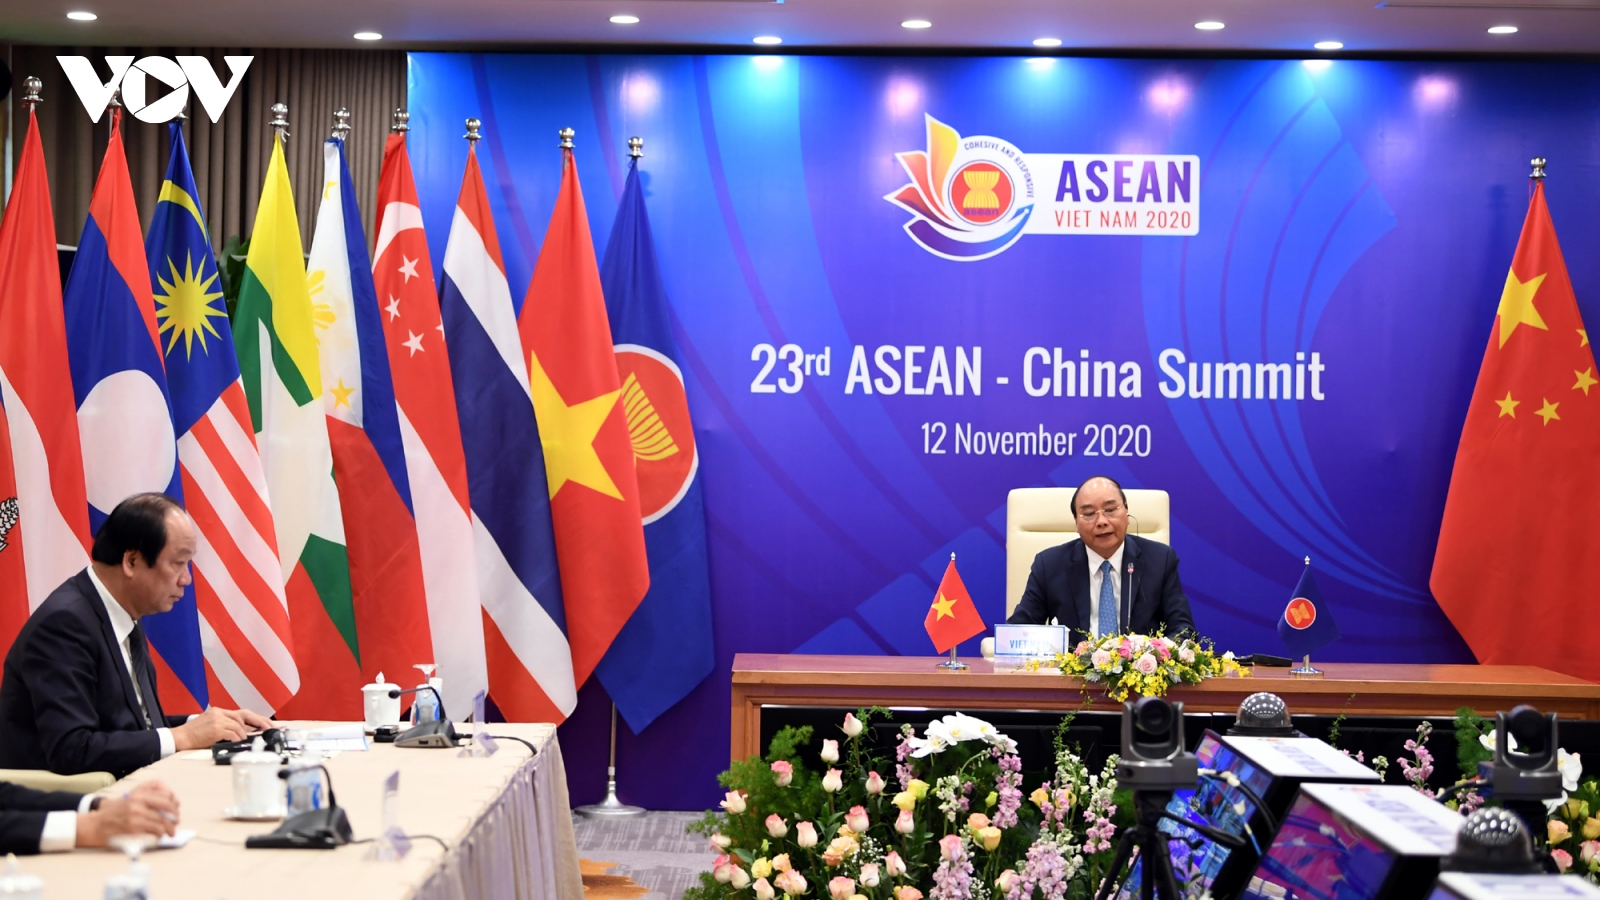 Bất chấp Covid-19, hợp tác ASEAN-Trung Quốc vẫn được tiến hành linh hoạt